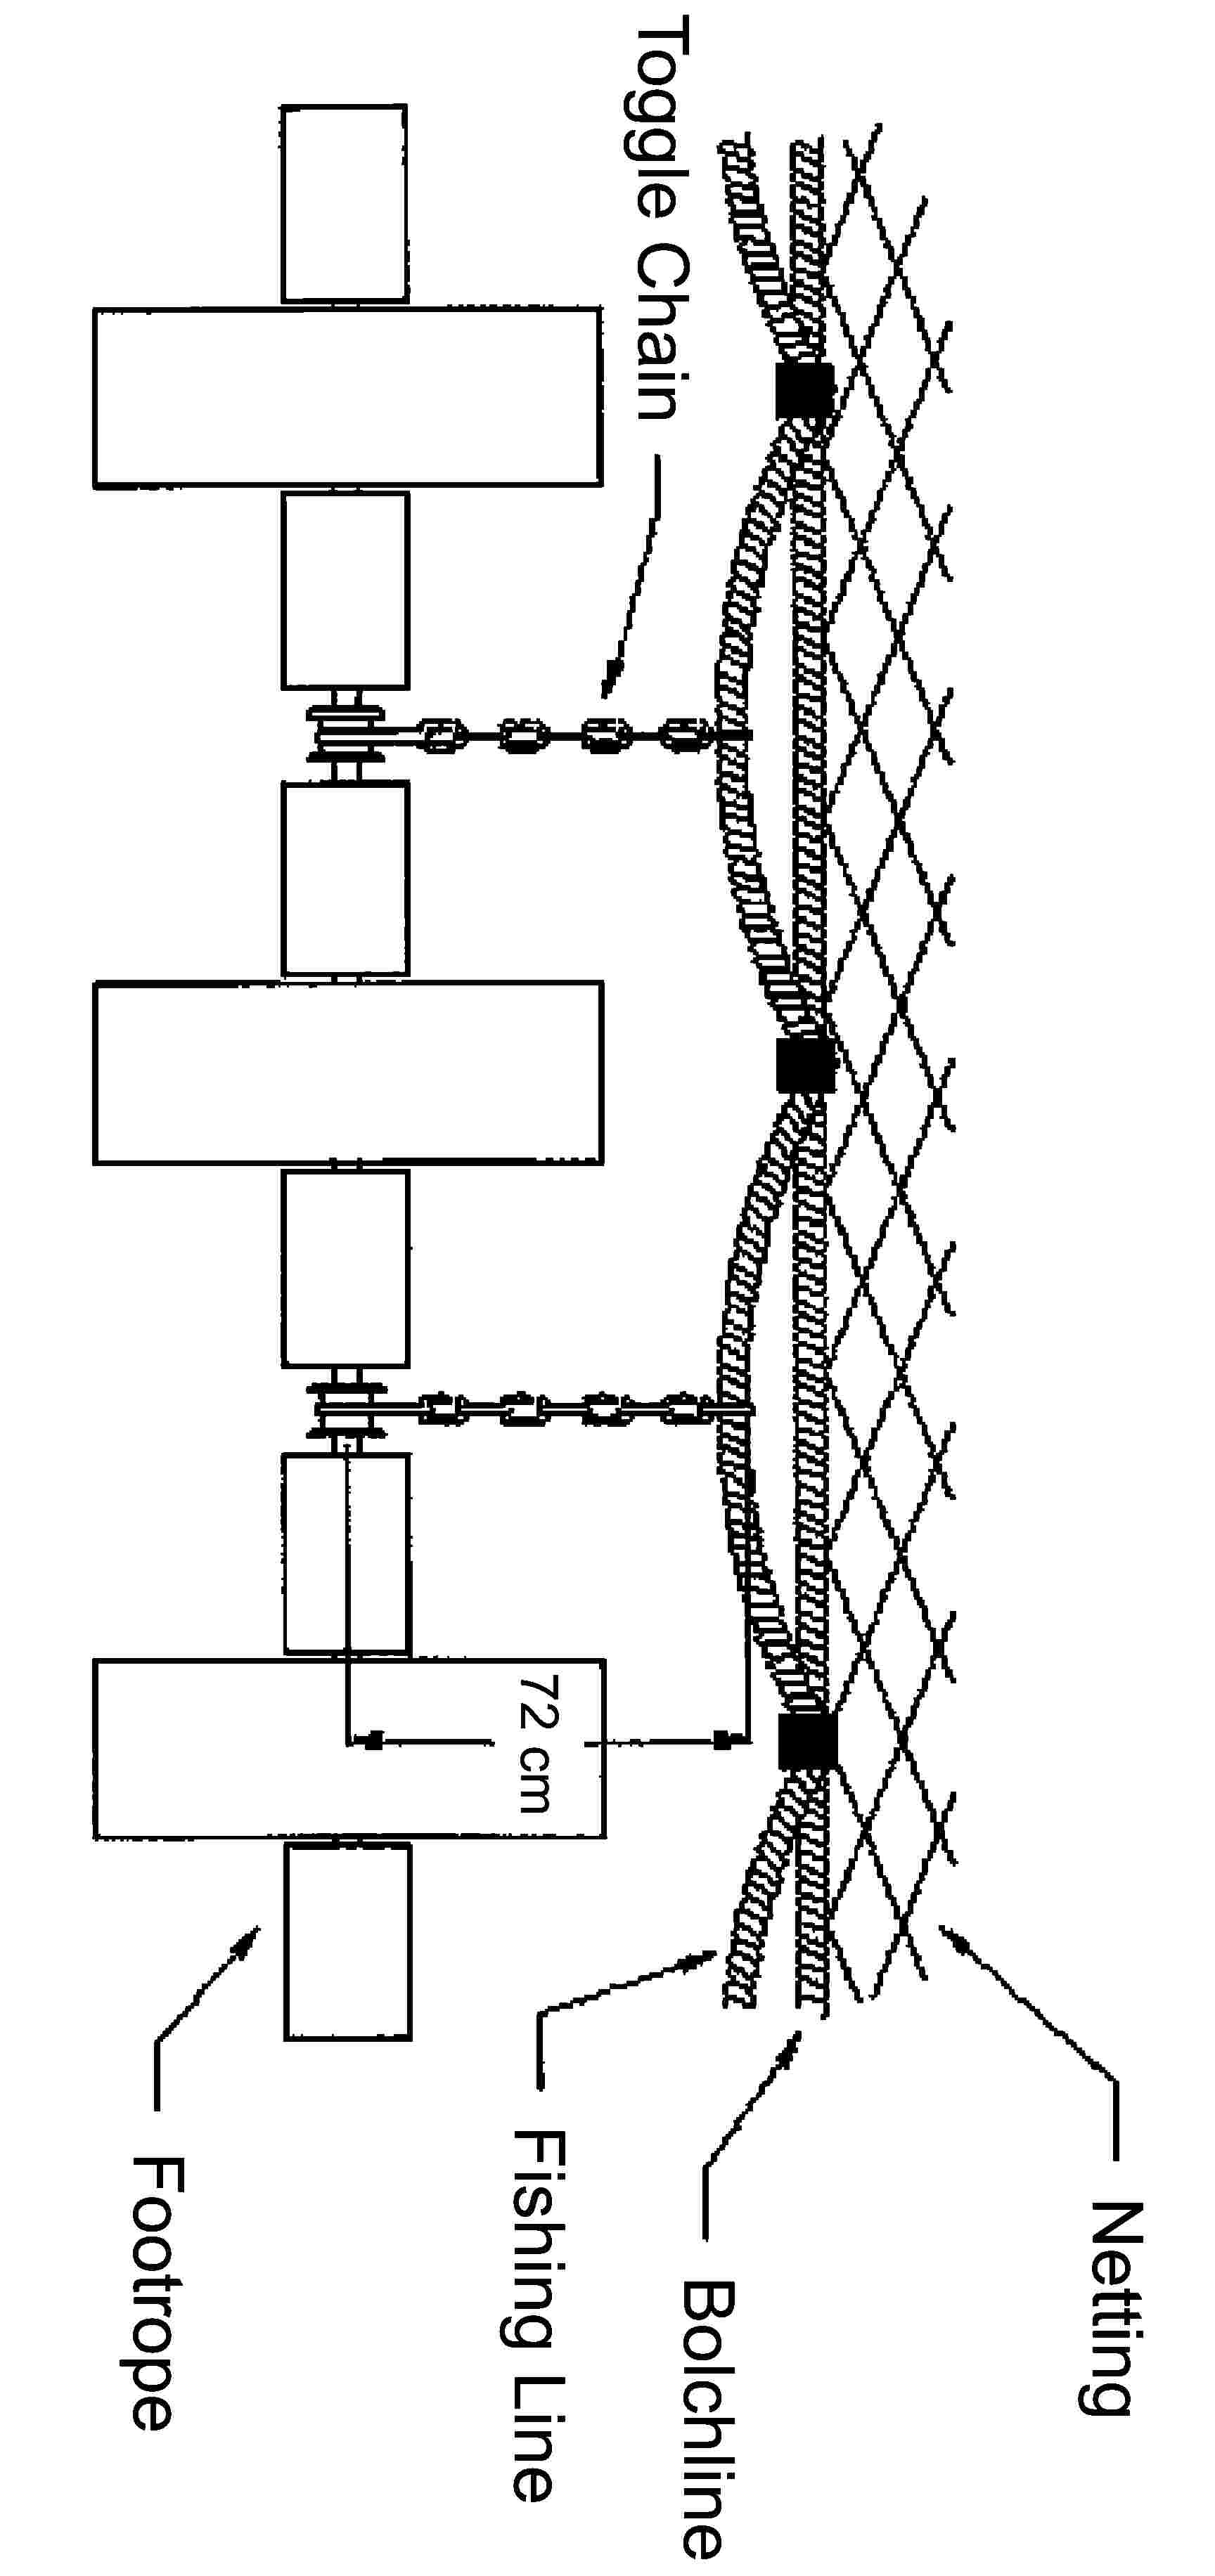 NettingToggle Chain72 cmFishing LineBolchlineFootrope